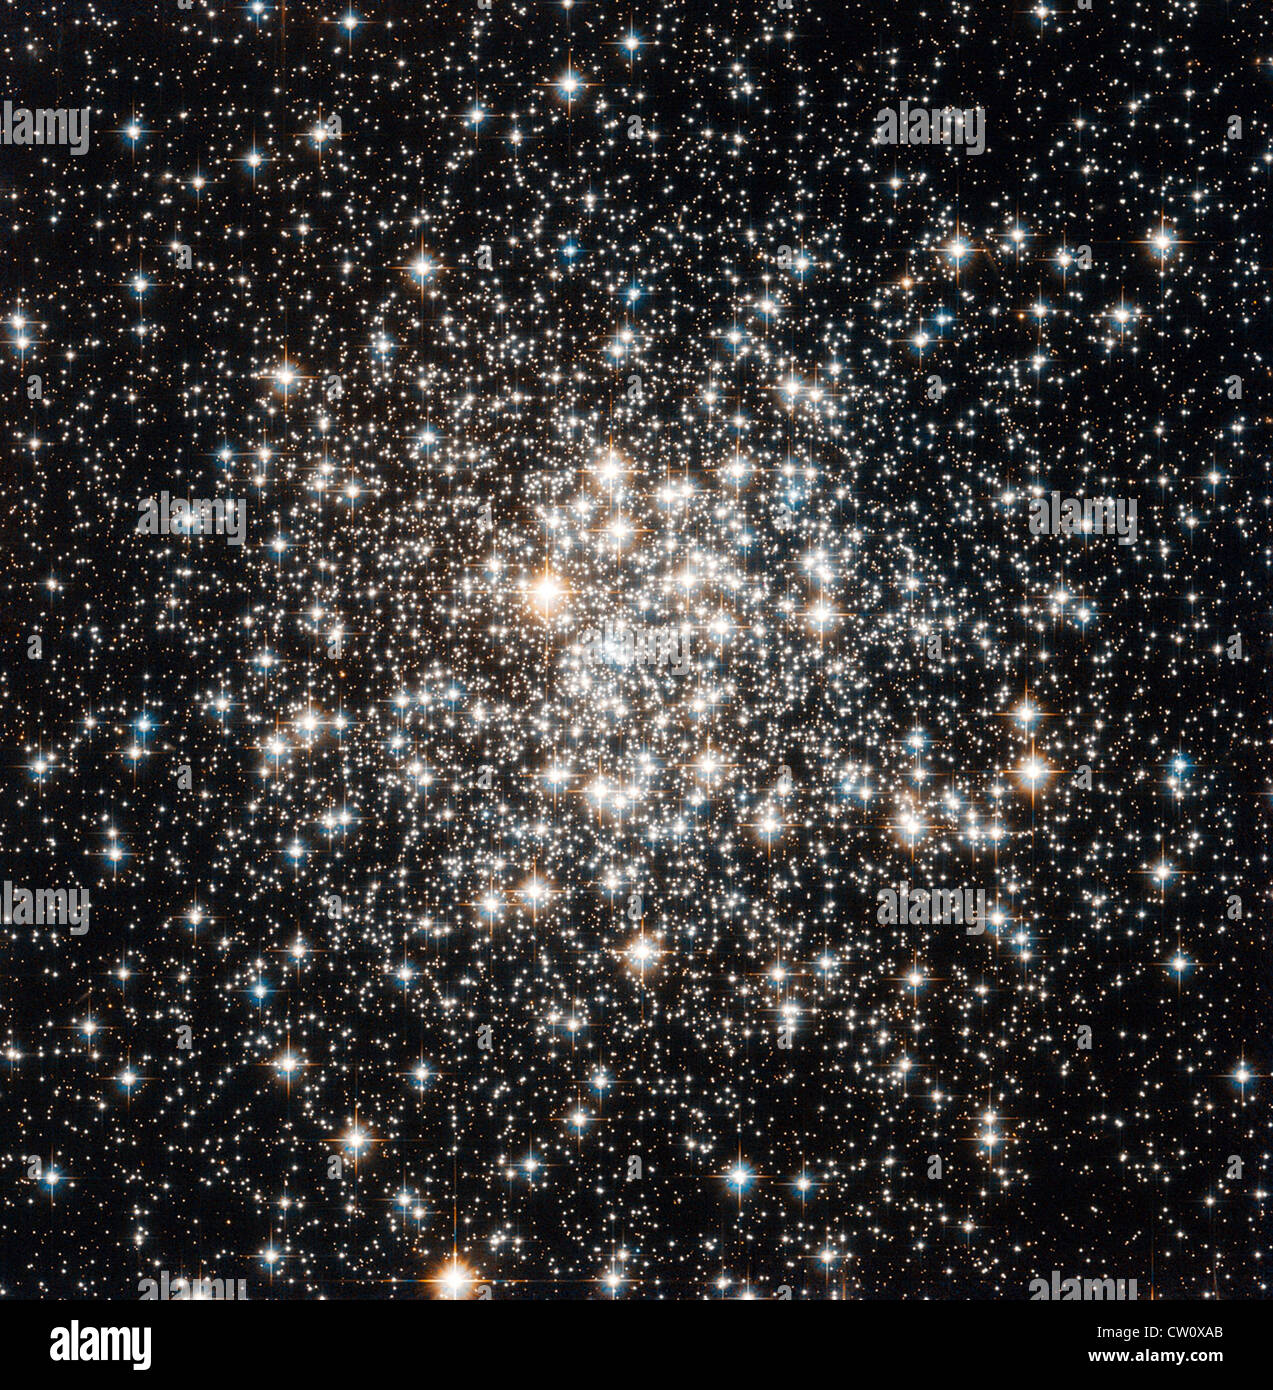 NASA/ESA Hubble Space Telescope a attiré une foule d'étoiles connu sous le nom de Messier 107 dans la constellation d'Ophiuchus Banque D'Images